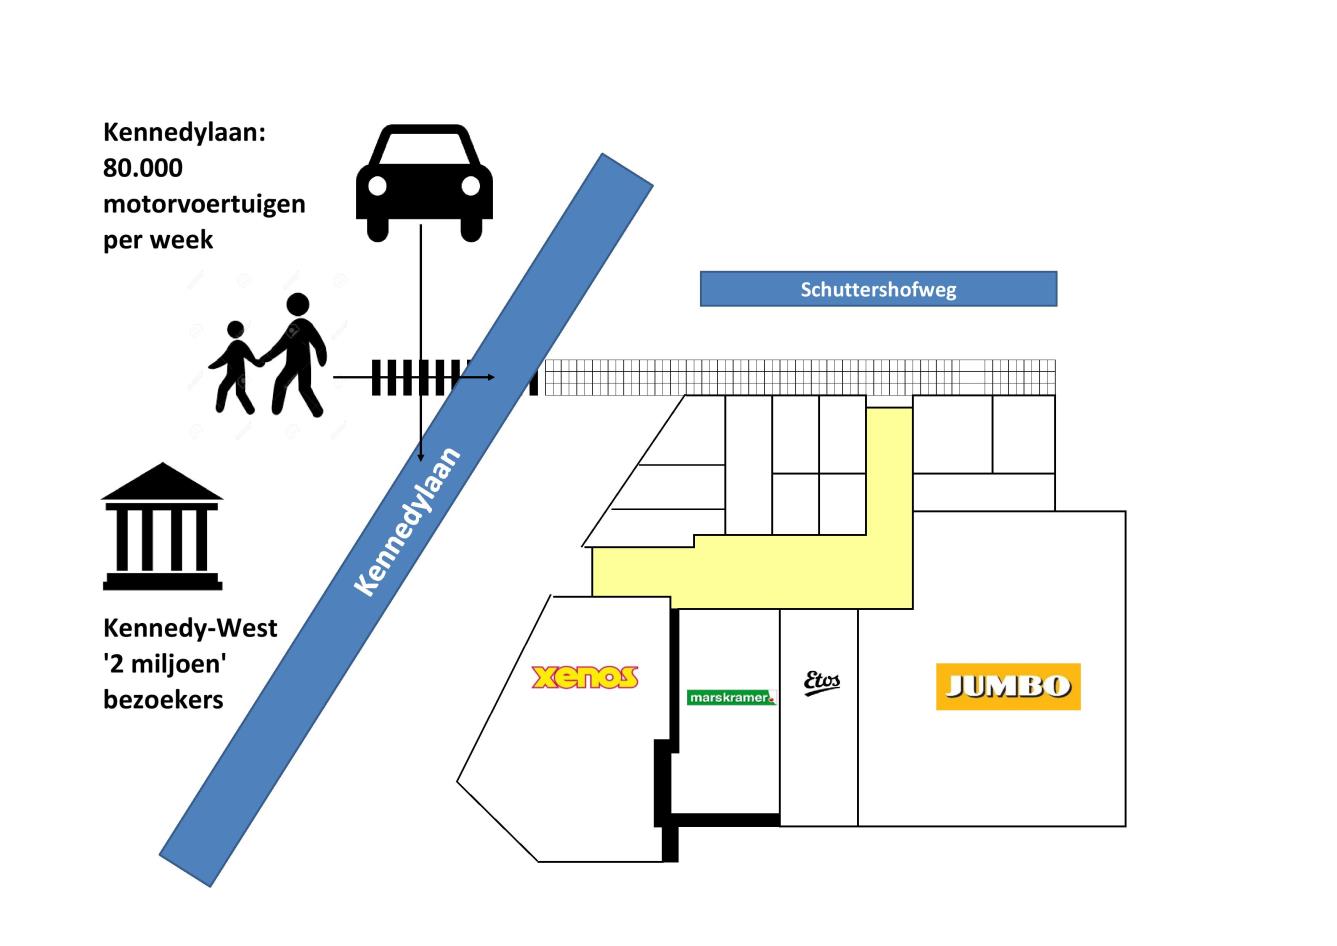 Onderstaand is de situatie schematisch weergegeven: De Schuttershofweg is in vergelijking met de Kennedylaan heilig om over te steken en heeft veel minder verkeersbewegingen.